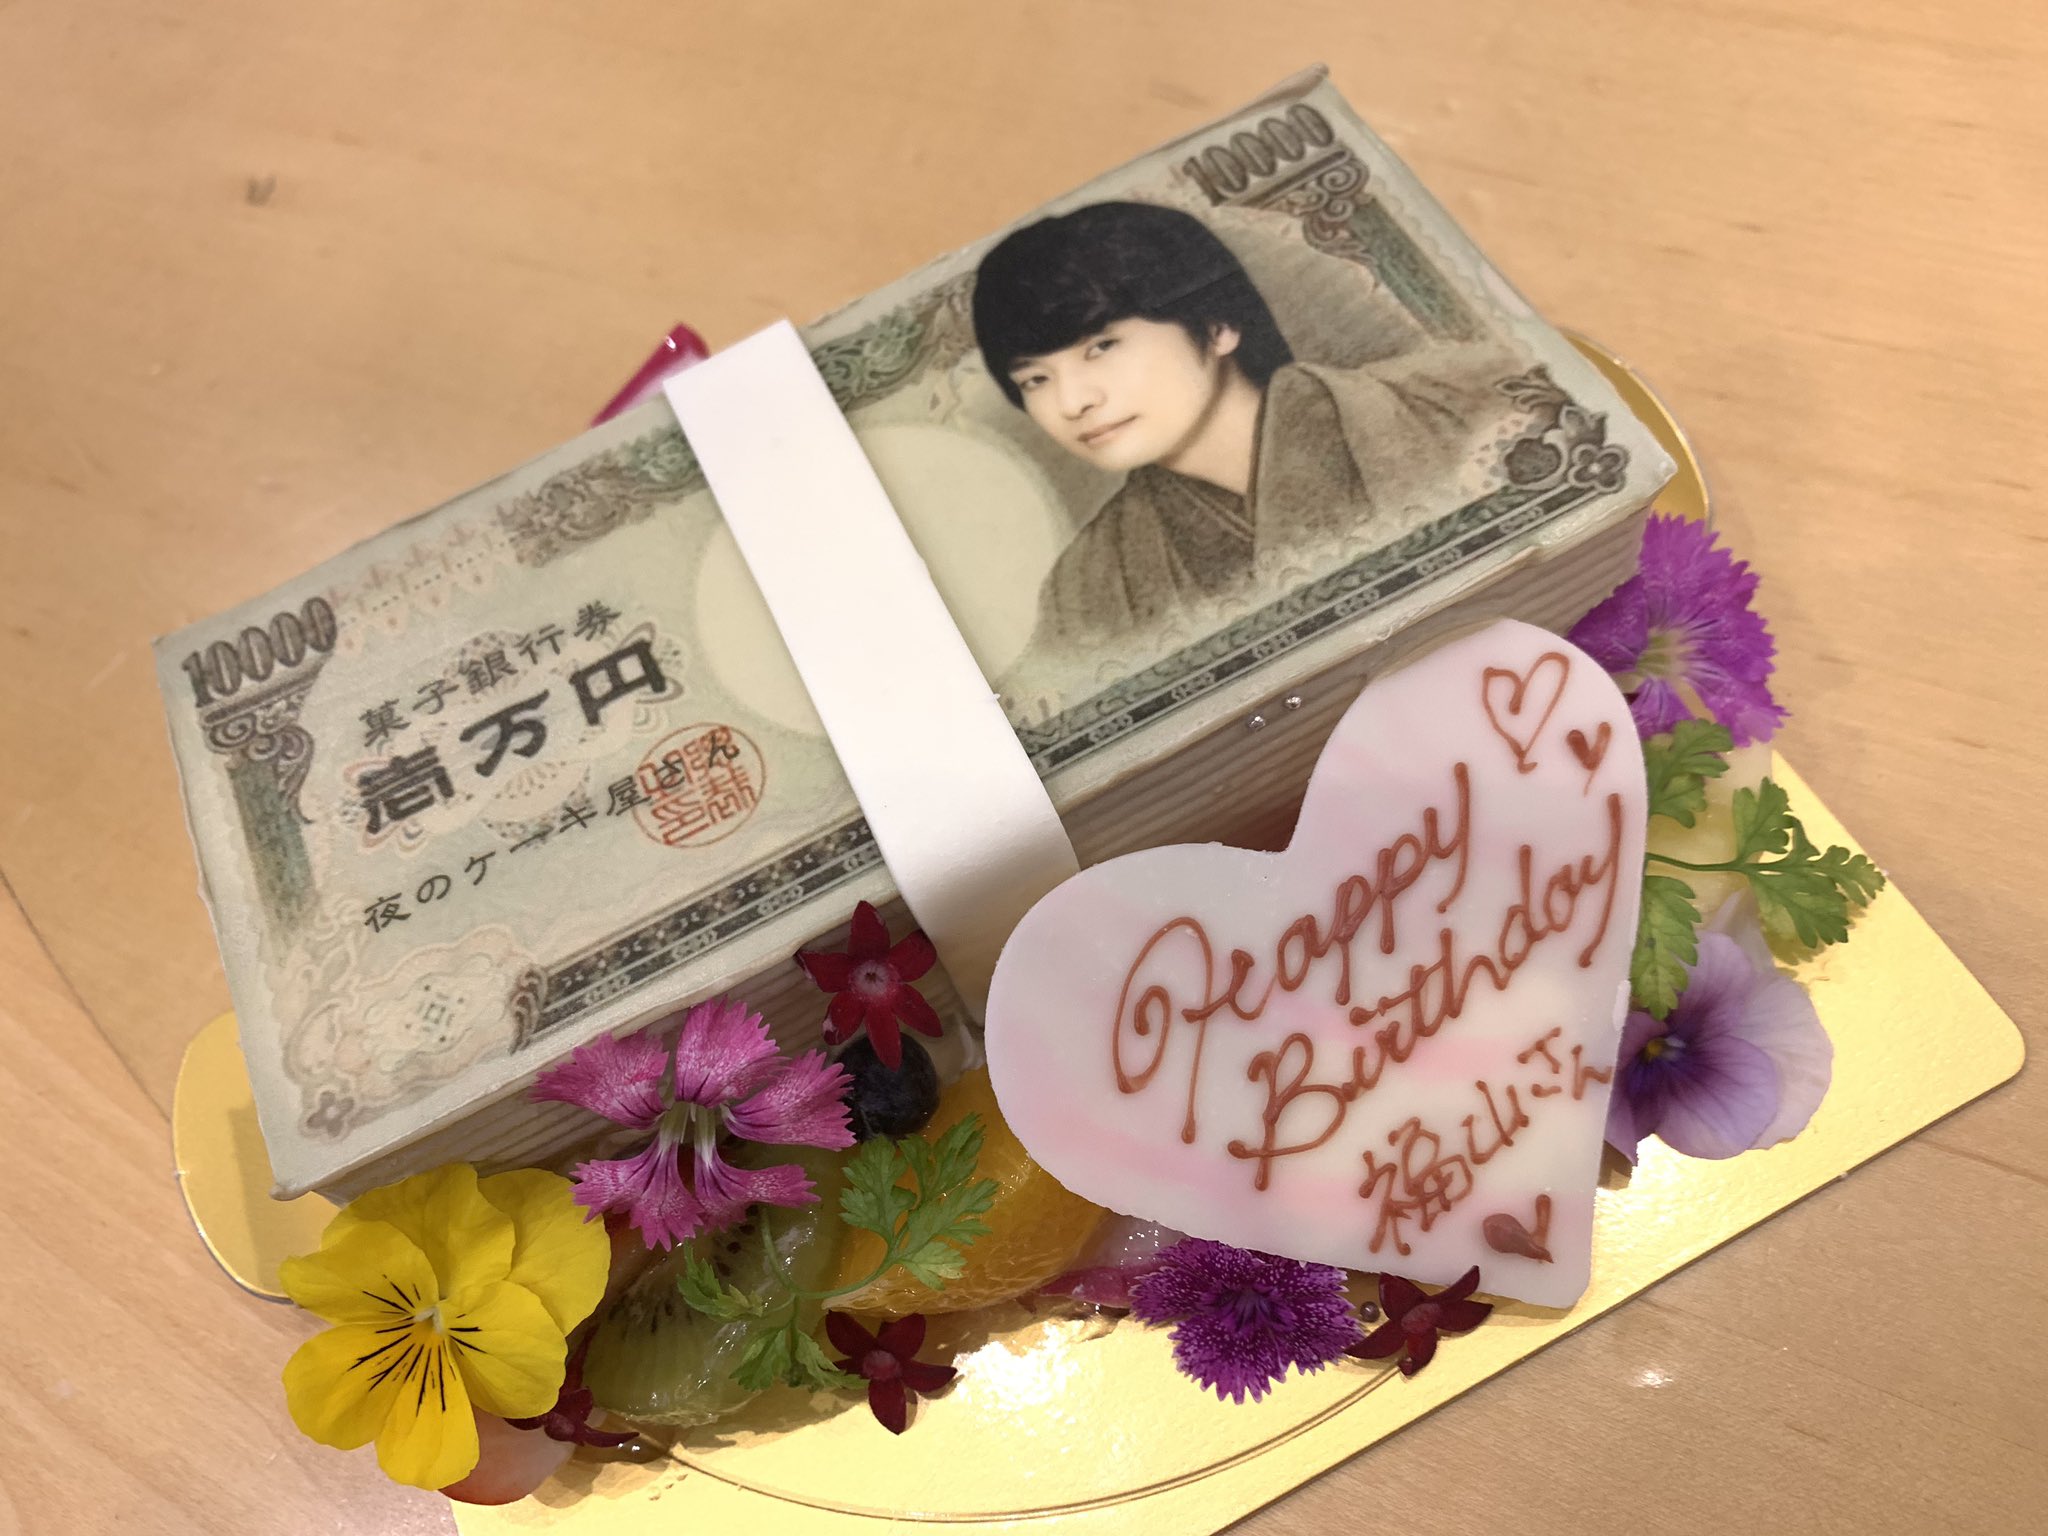 こんなケーキ初めて見た!11月26日は福山潤さんの誕生日